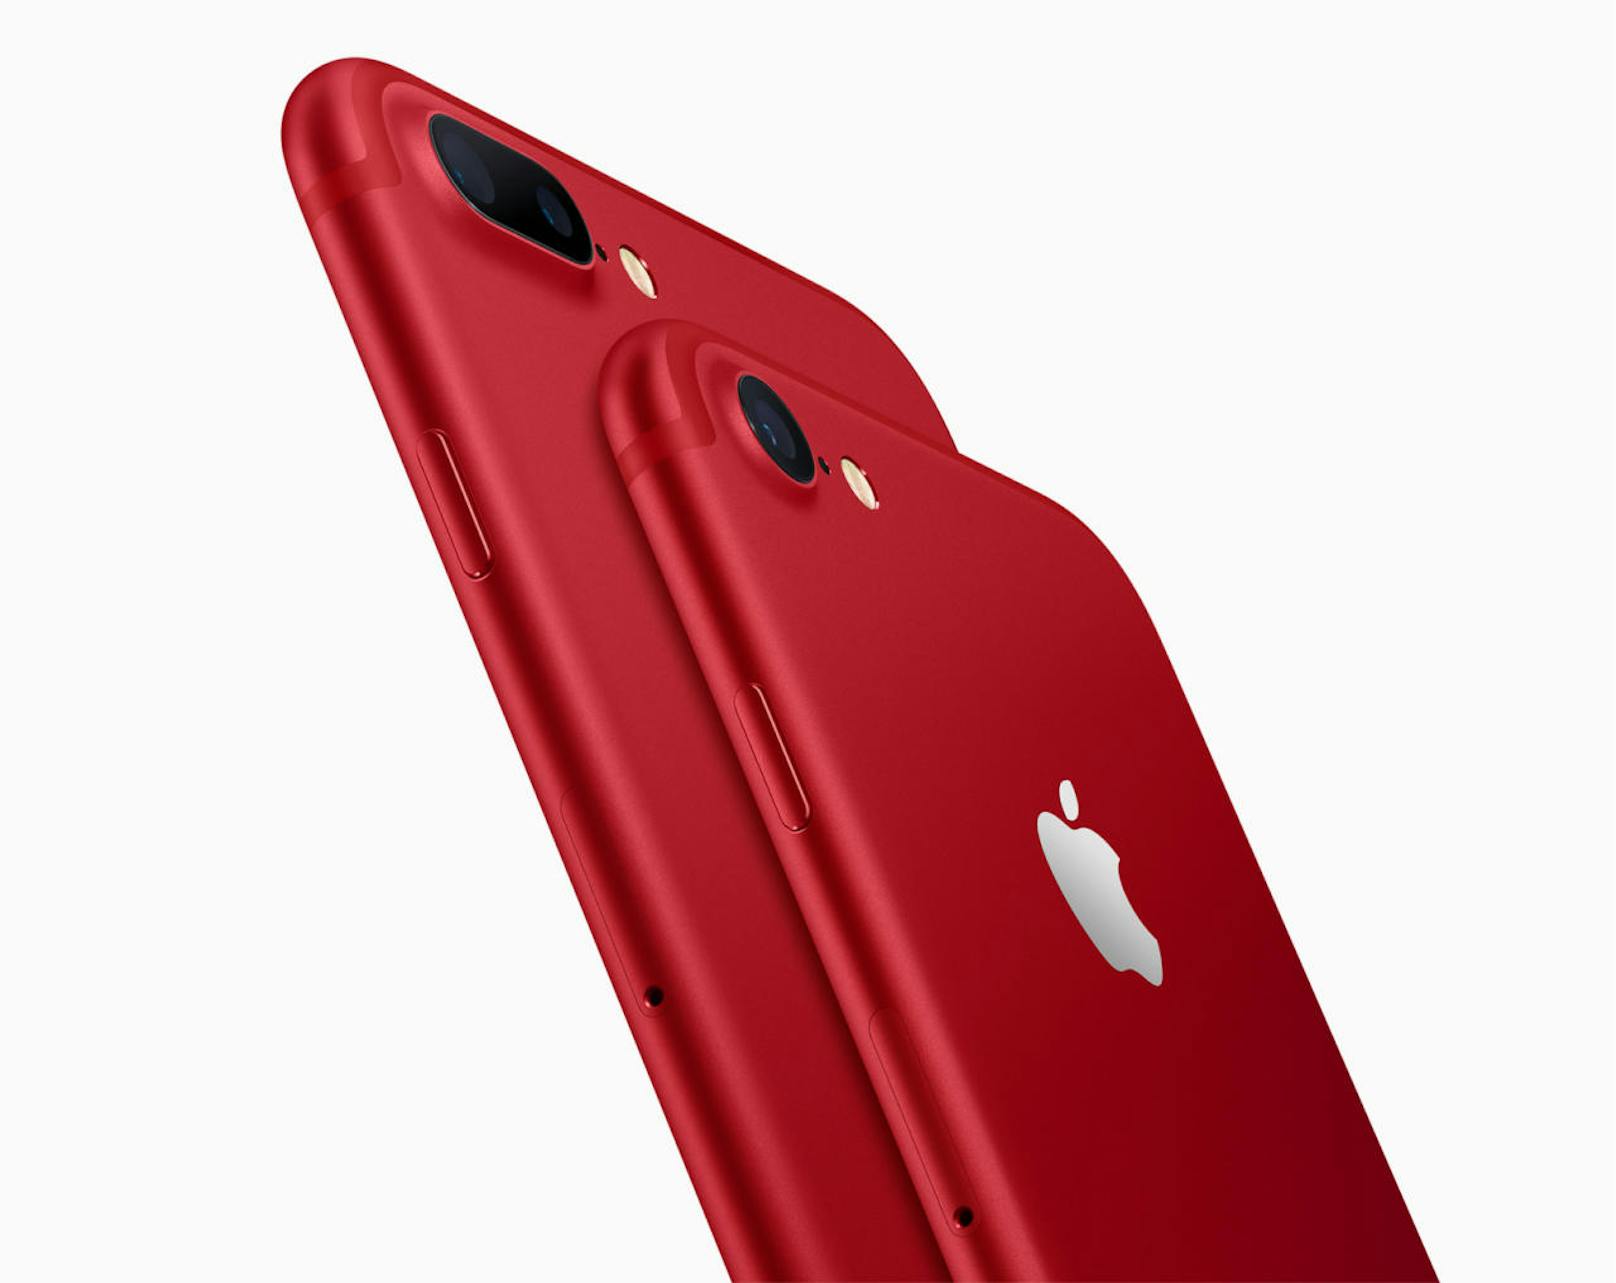 Andererseits wagte der Konzern bei der Plastikrückschale des iPhone 5c den Komplettumstieg auf Farbe. Dieses Einsteiger-iPhone gab es in Weiß, Gelb, Pink, Blau und Grün; doch das Konzept setzte sich am Markt nicht durch, schon bald verschwand das Gerät. Für das iPhone 6s von 2015 kam Roségold als vierte Option hinzu. 2016 ersetzte Apple für das iPhone 7 Spacegrau durch die Alternativen Schwarz und Diamantschwarz. Mit dem jetzt vorgestellten roten Gehäuse ist die Palette damit auf vier Gehäusefarben angewachsen.